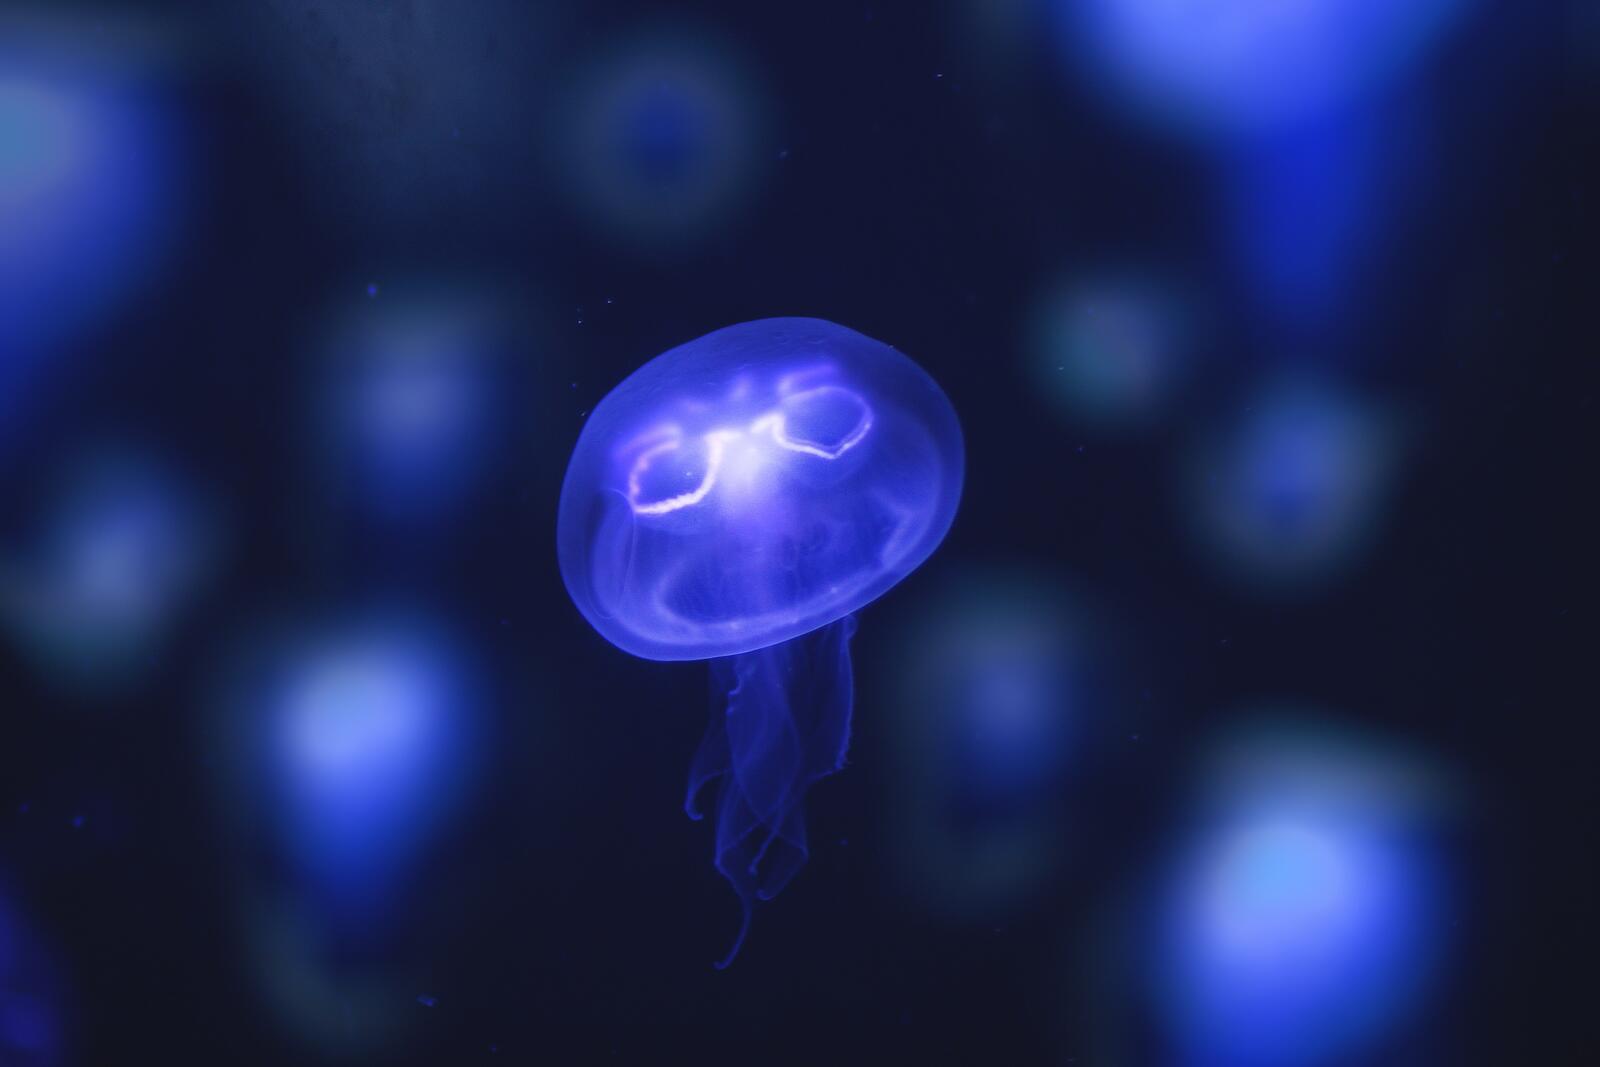 Wallpapers jellyfish boke neon on the desktop